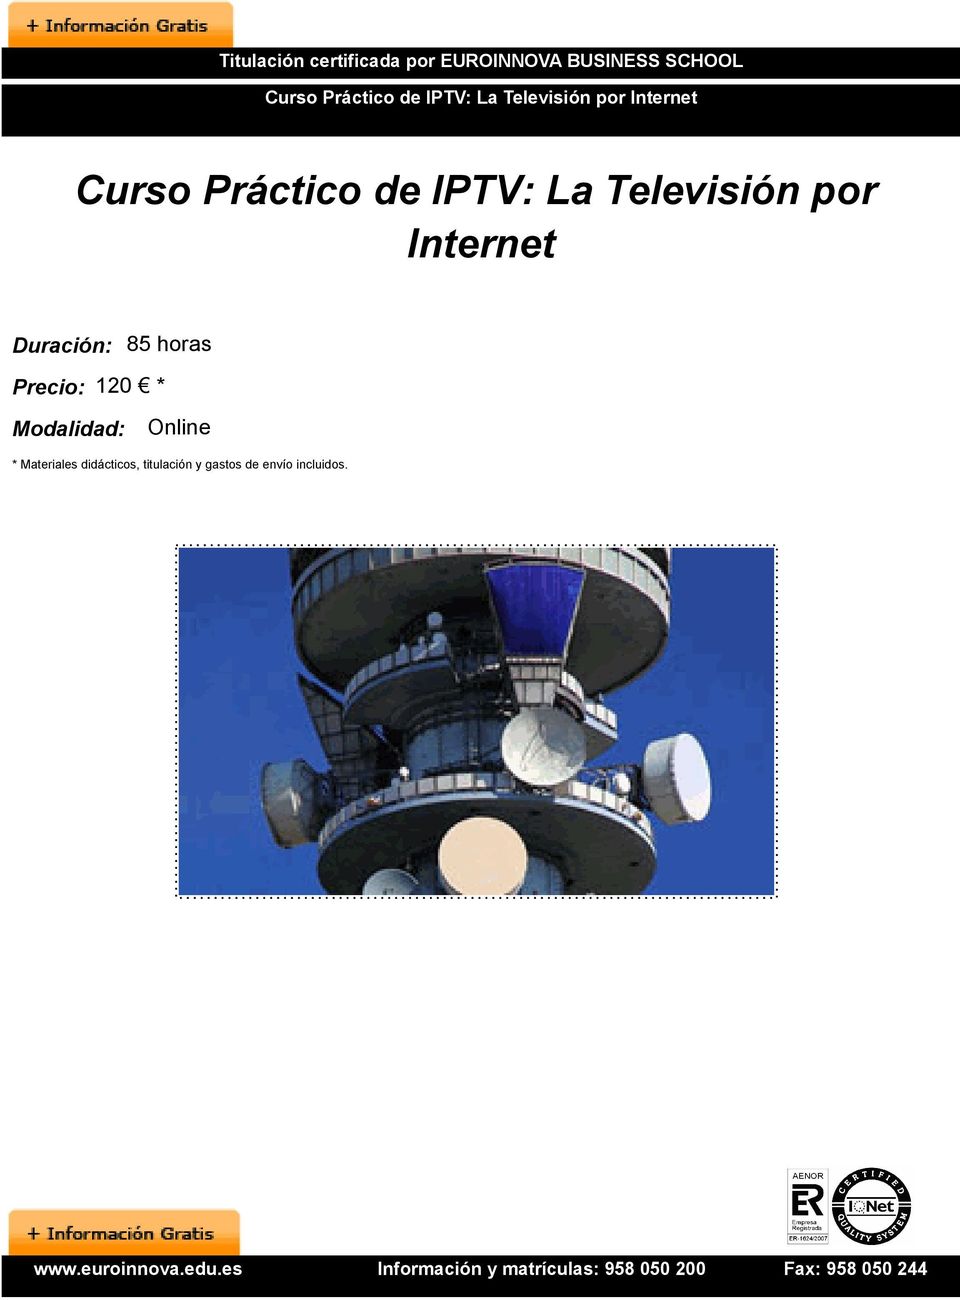 IPTV: La Televisión por Internet Duración: 85 horas Precio: 120 *